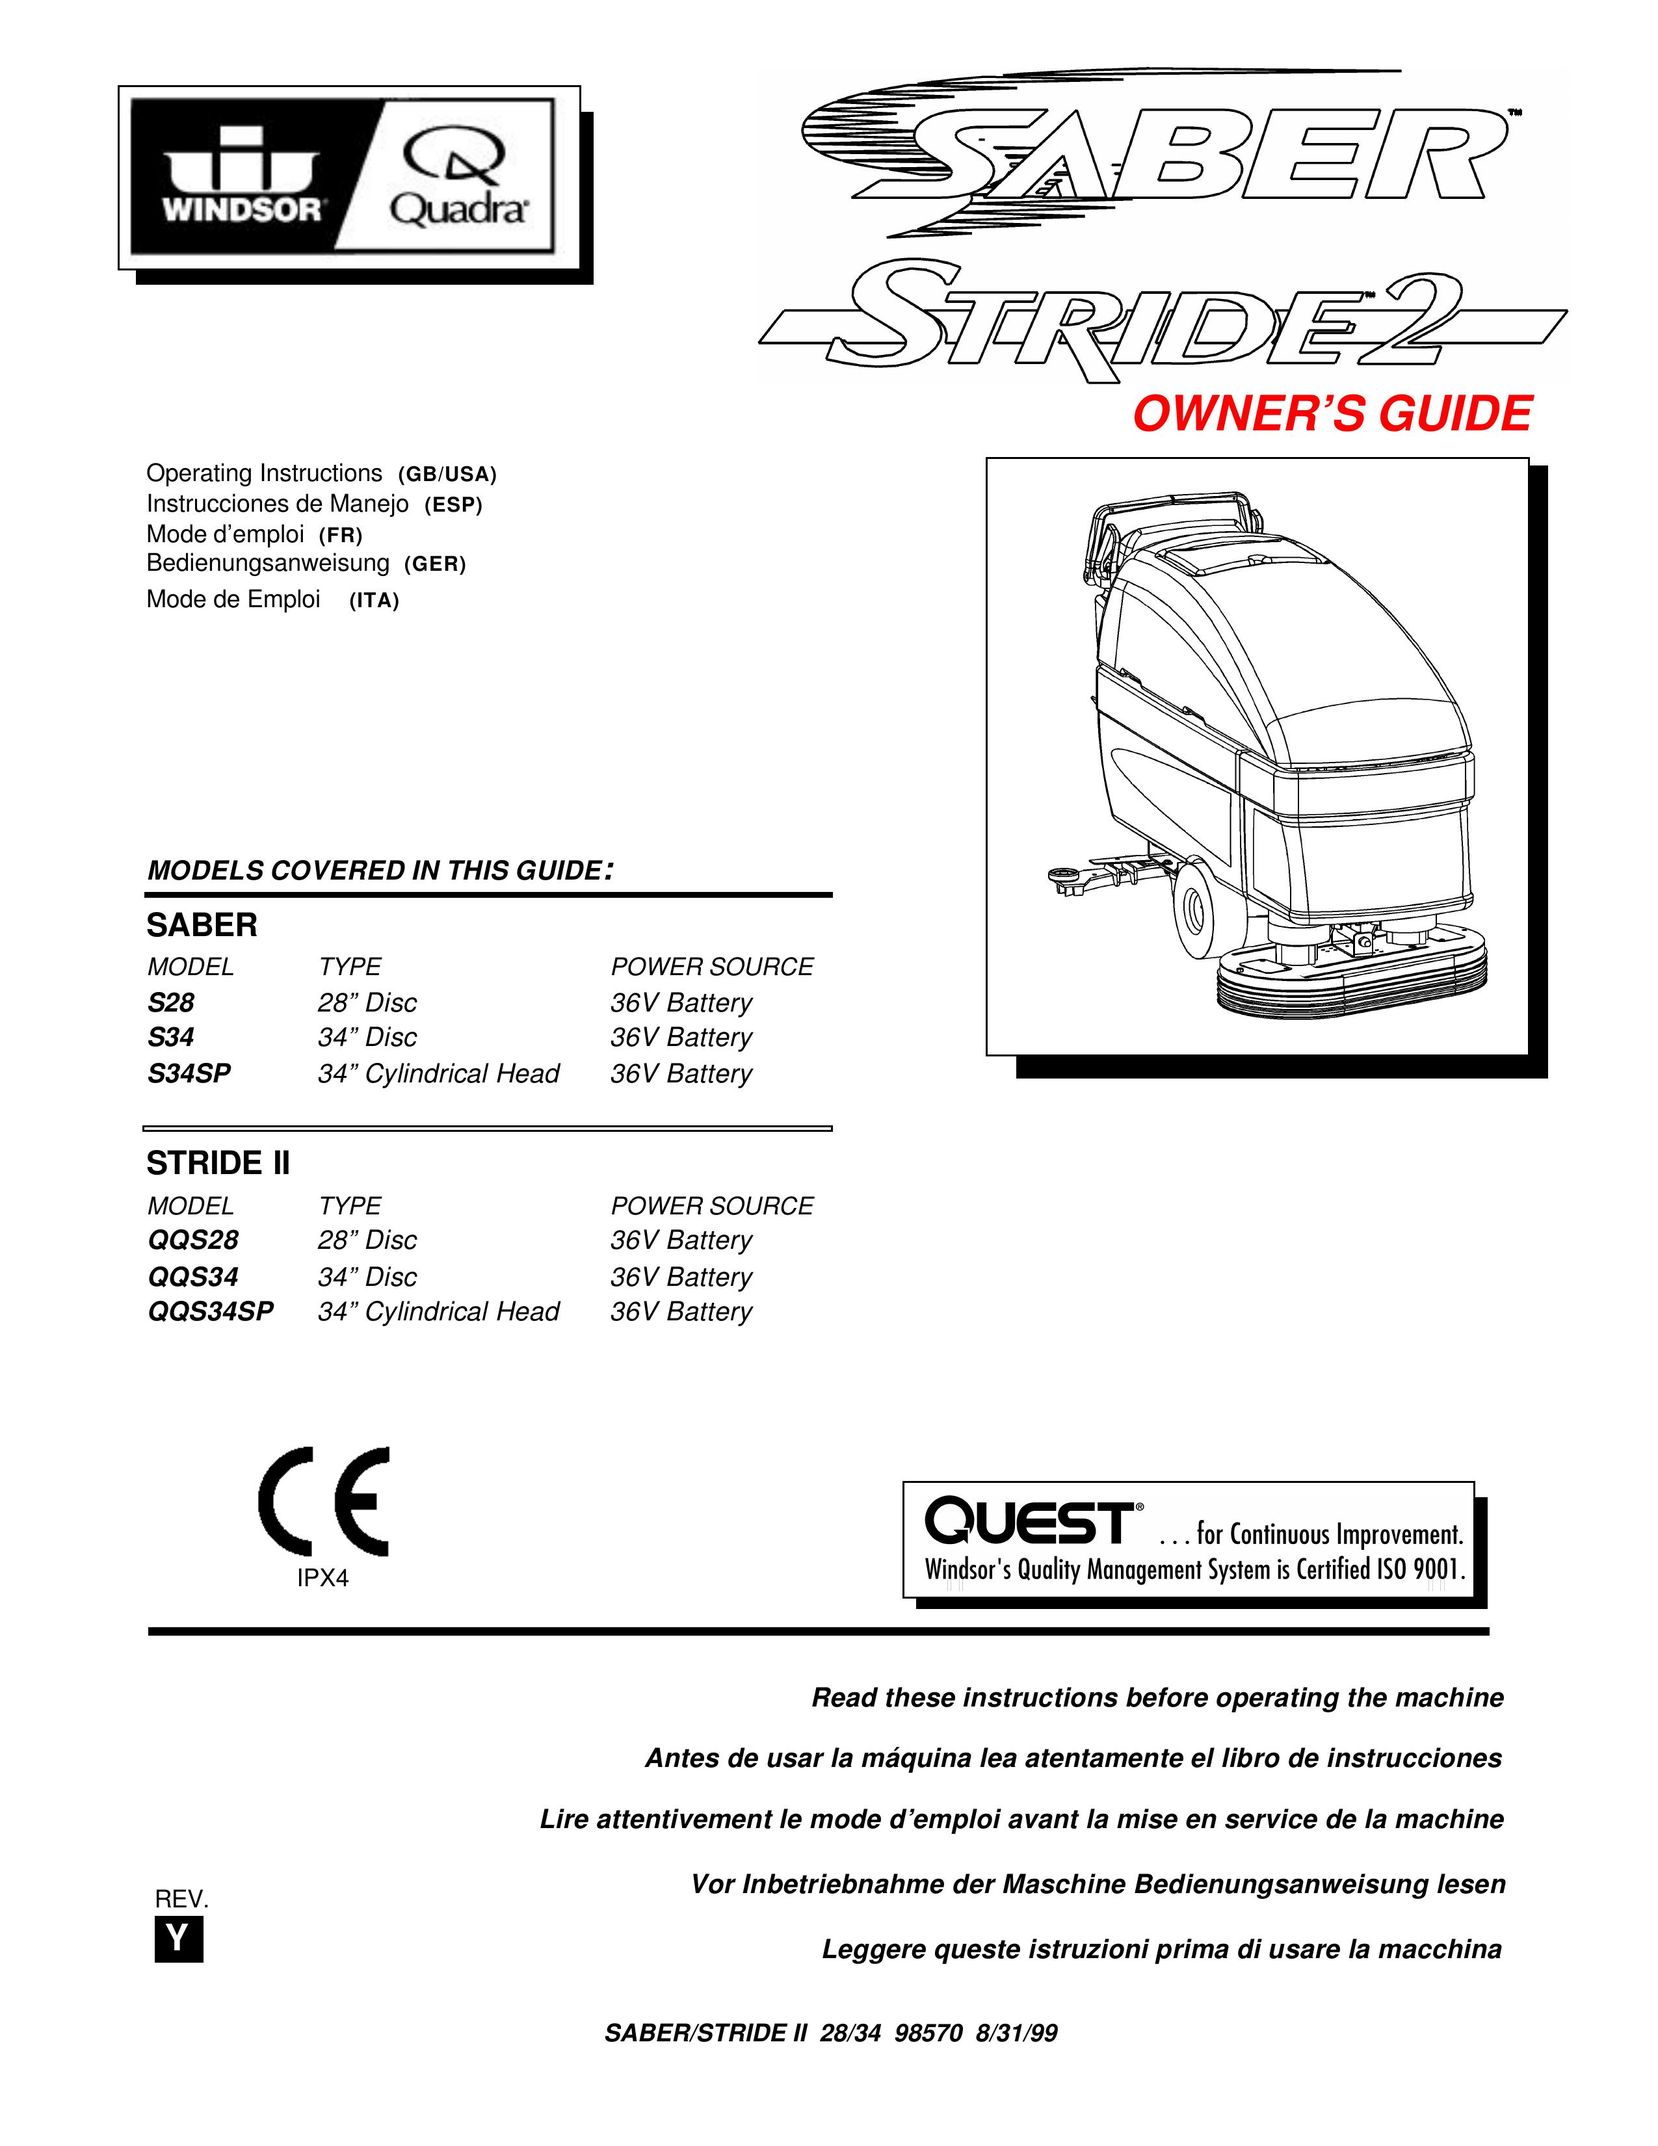 Windsor QQS34SP Sander User Manual